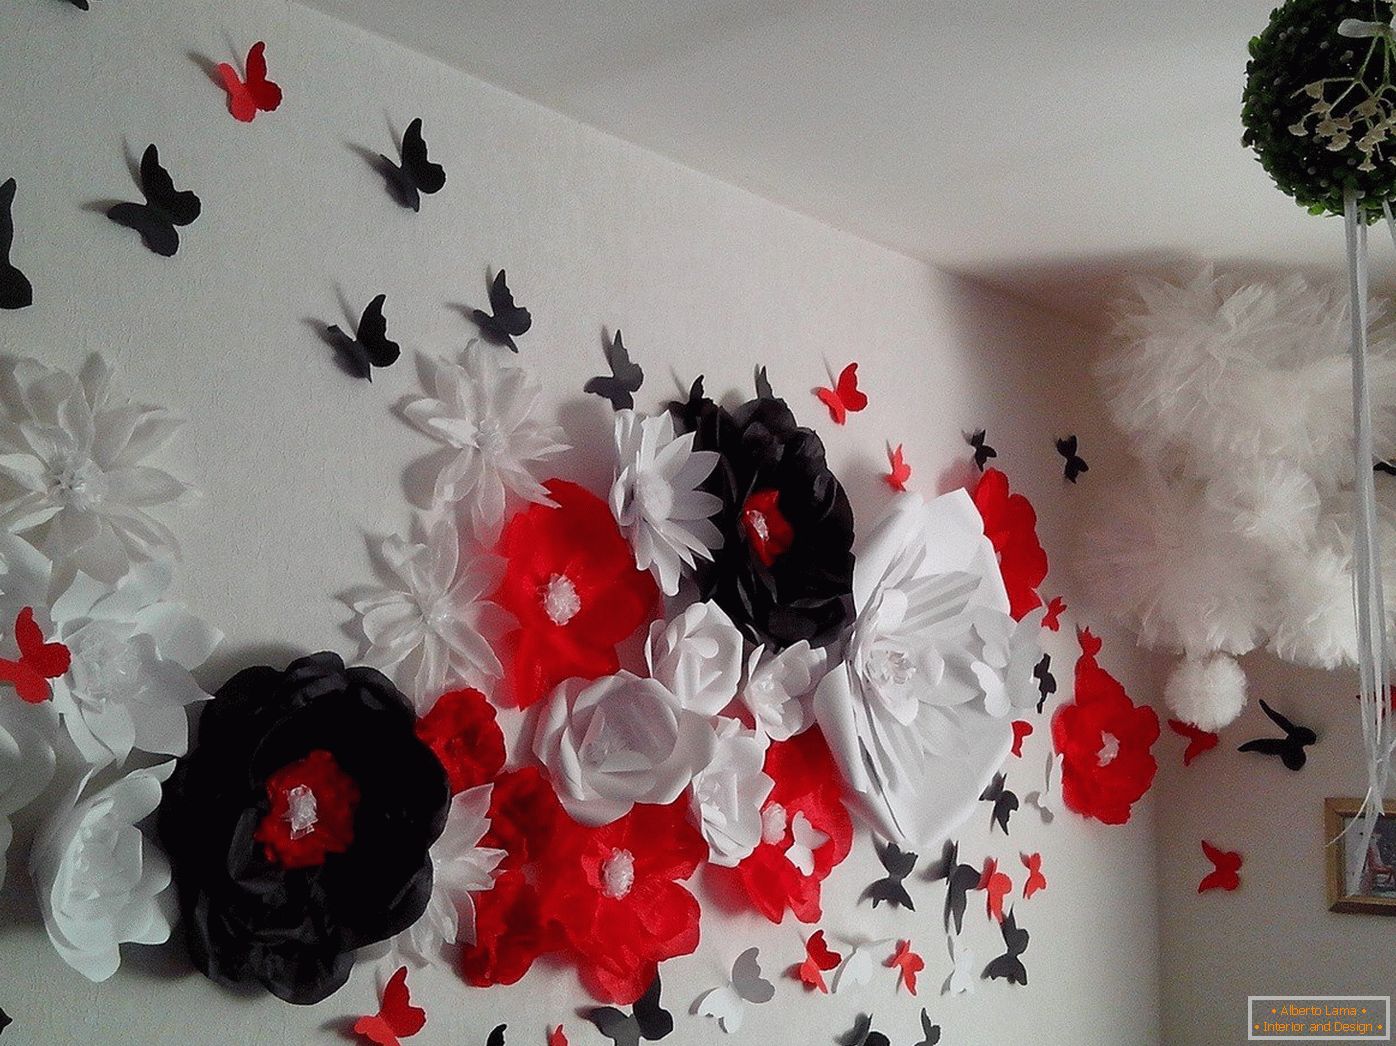 Blumen und Schmetterlinge an der Wand